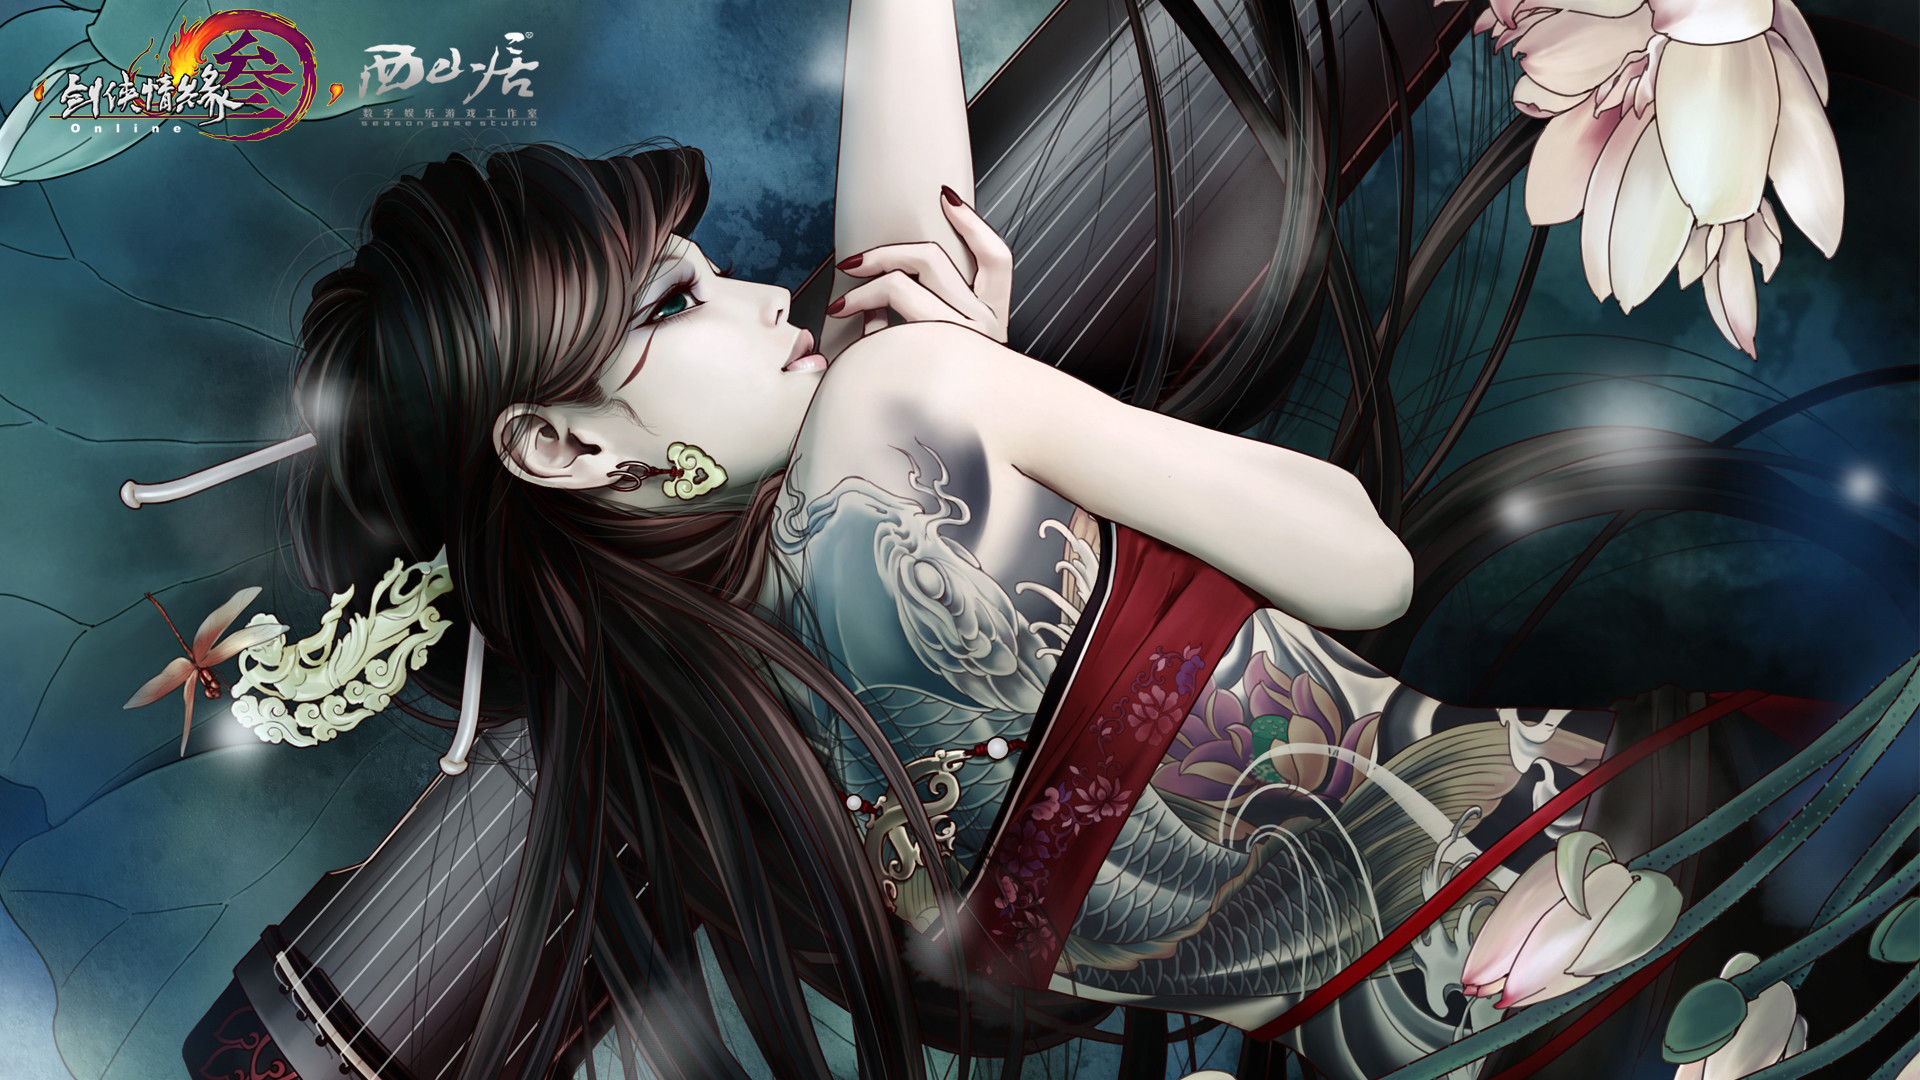 Jianxia Qingyuan 3 Wallpaper Tattoo Girl 1080p from Shadow of Death